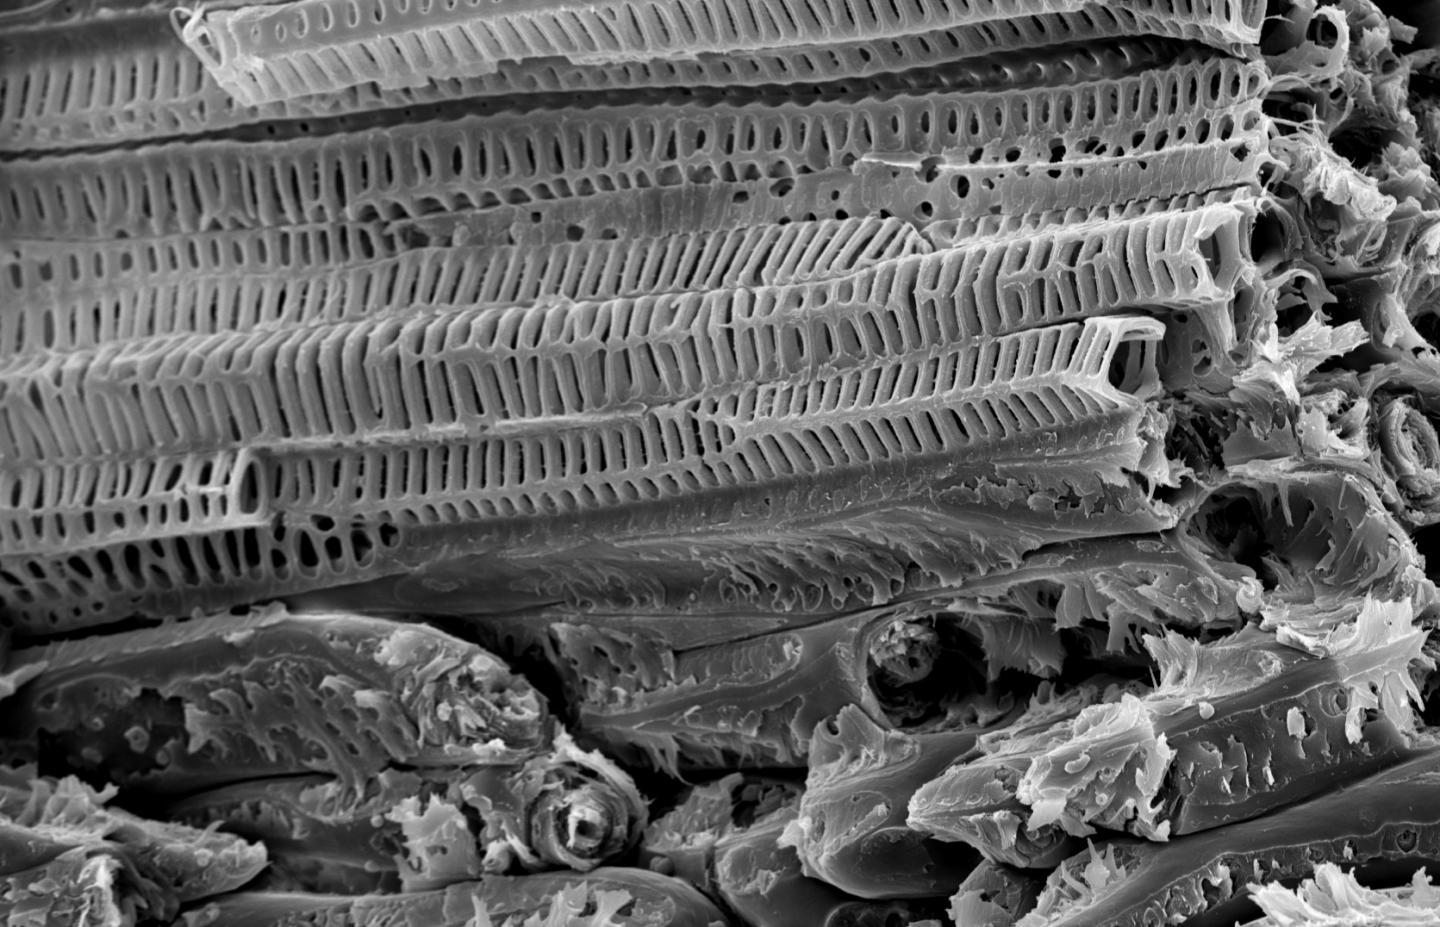 Estructura del coco, vista con tomografía y microscopía electrónica.  Fuente: Grupo de Biomecánica de la Plantas de la Universidad de Freiburg.